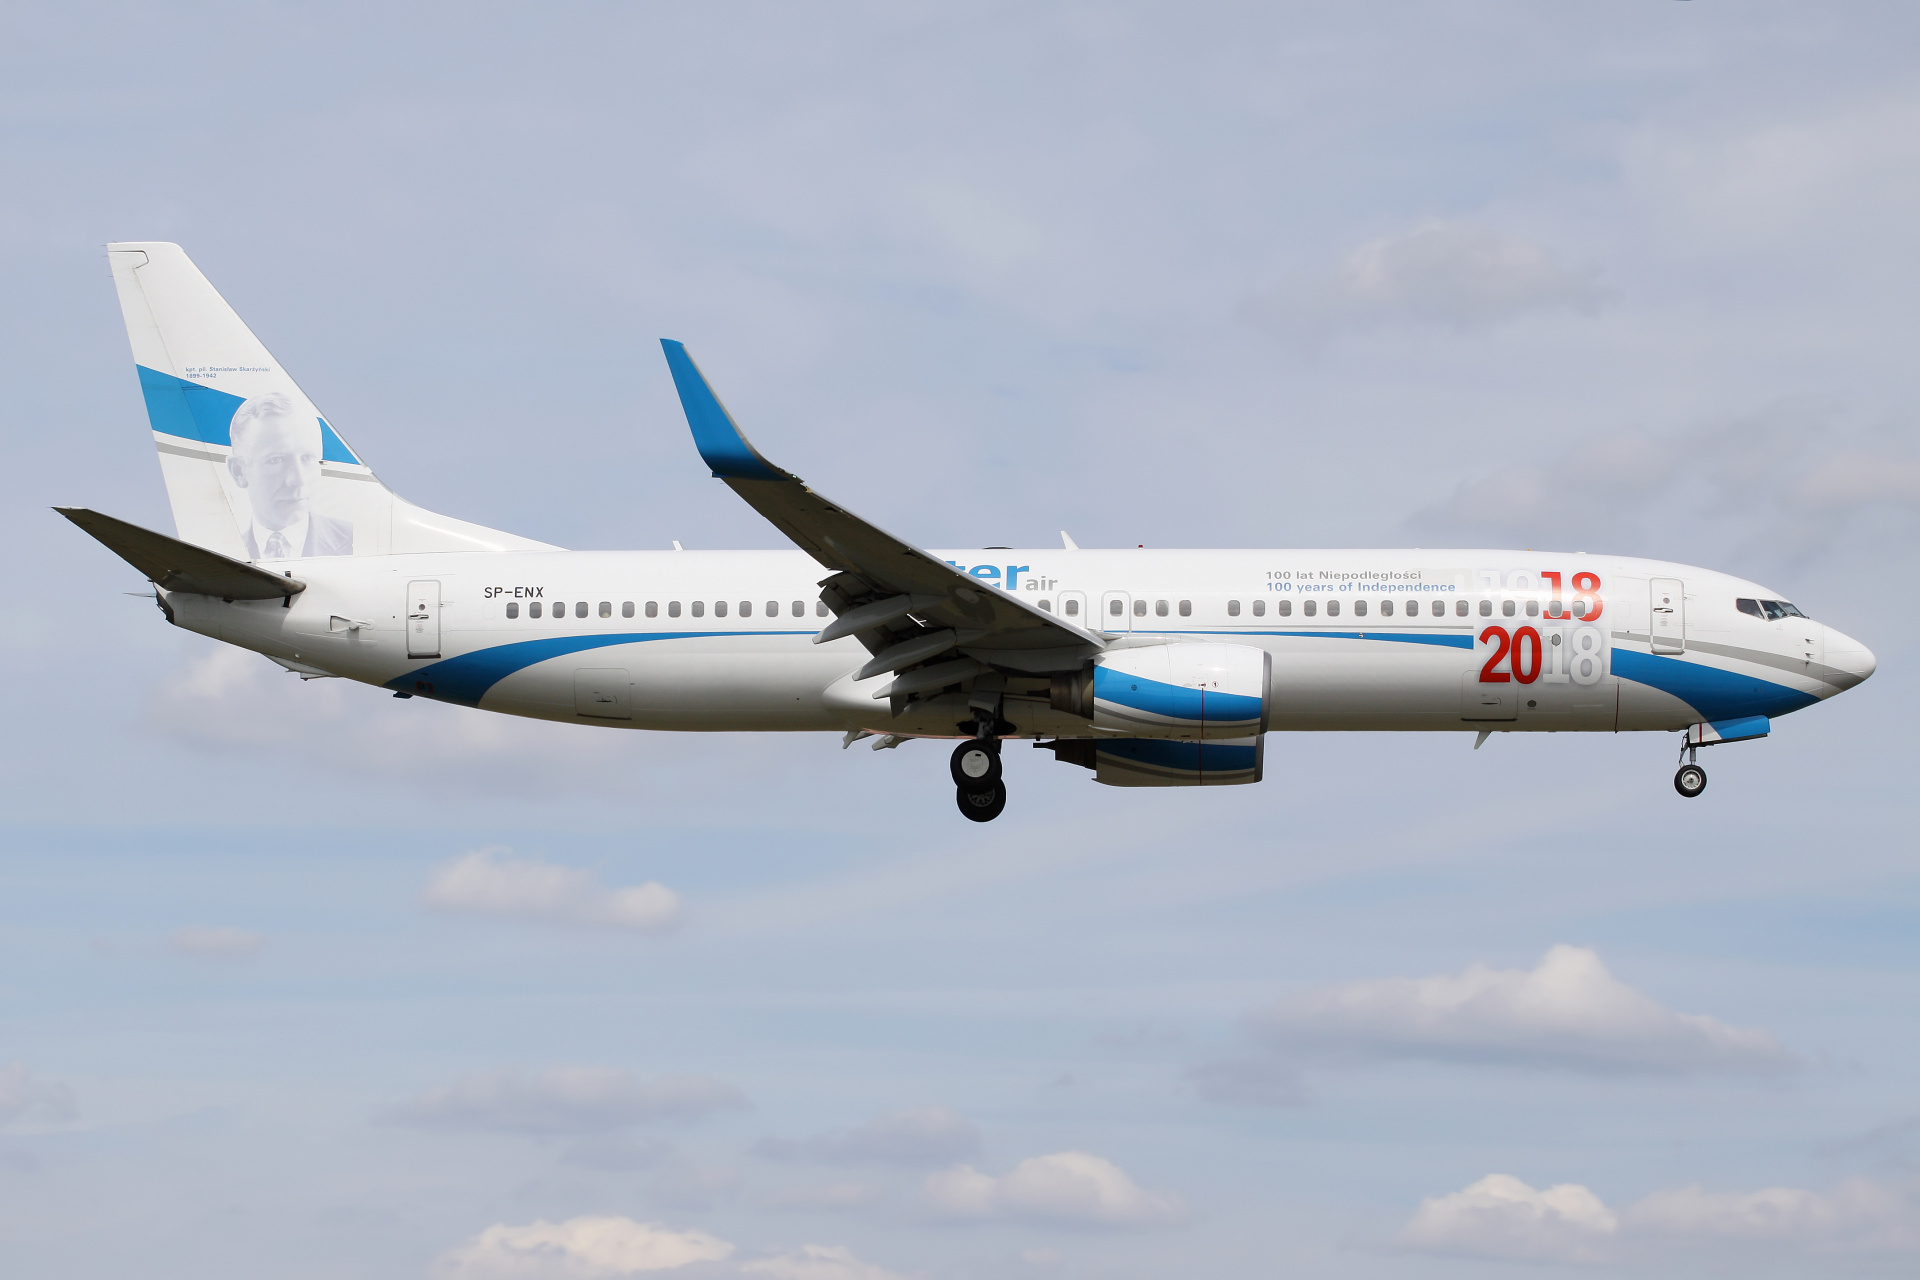 SP-ENX (malowanie 100 lat Niepodległości) (Samoloty » Spotting na EPWA » Boeing 737-800 » Enter Air)